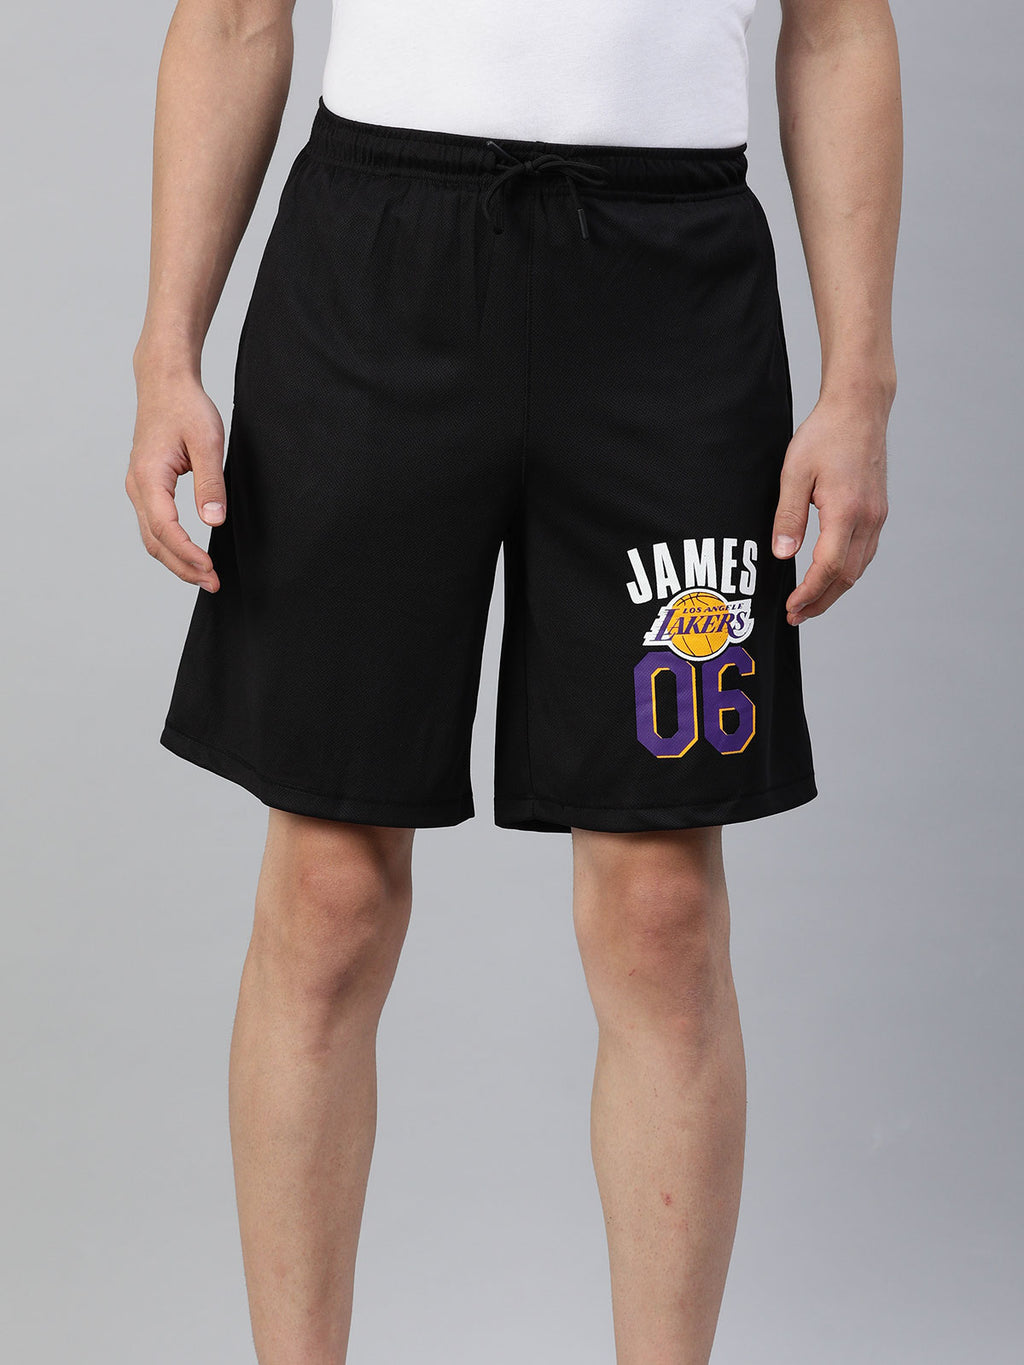 NBA: Camo Basketball Shorts - Black – Shop The Arena